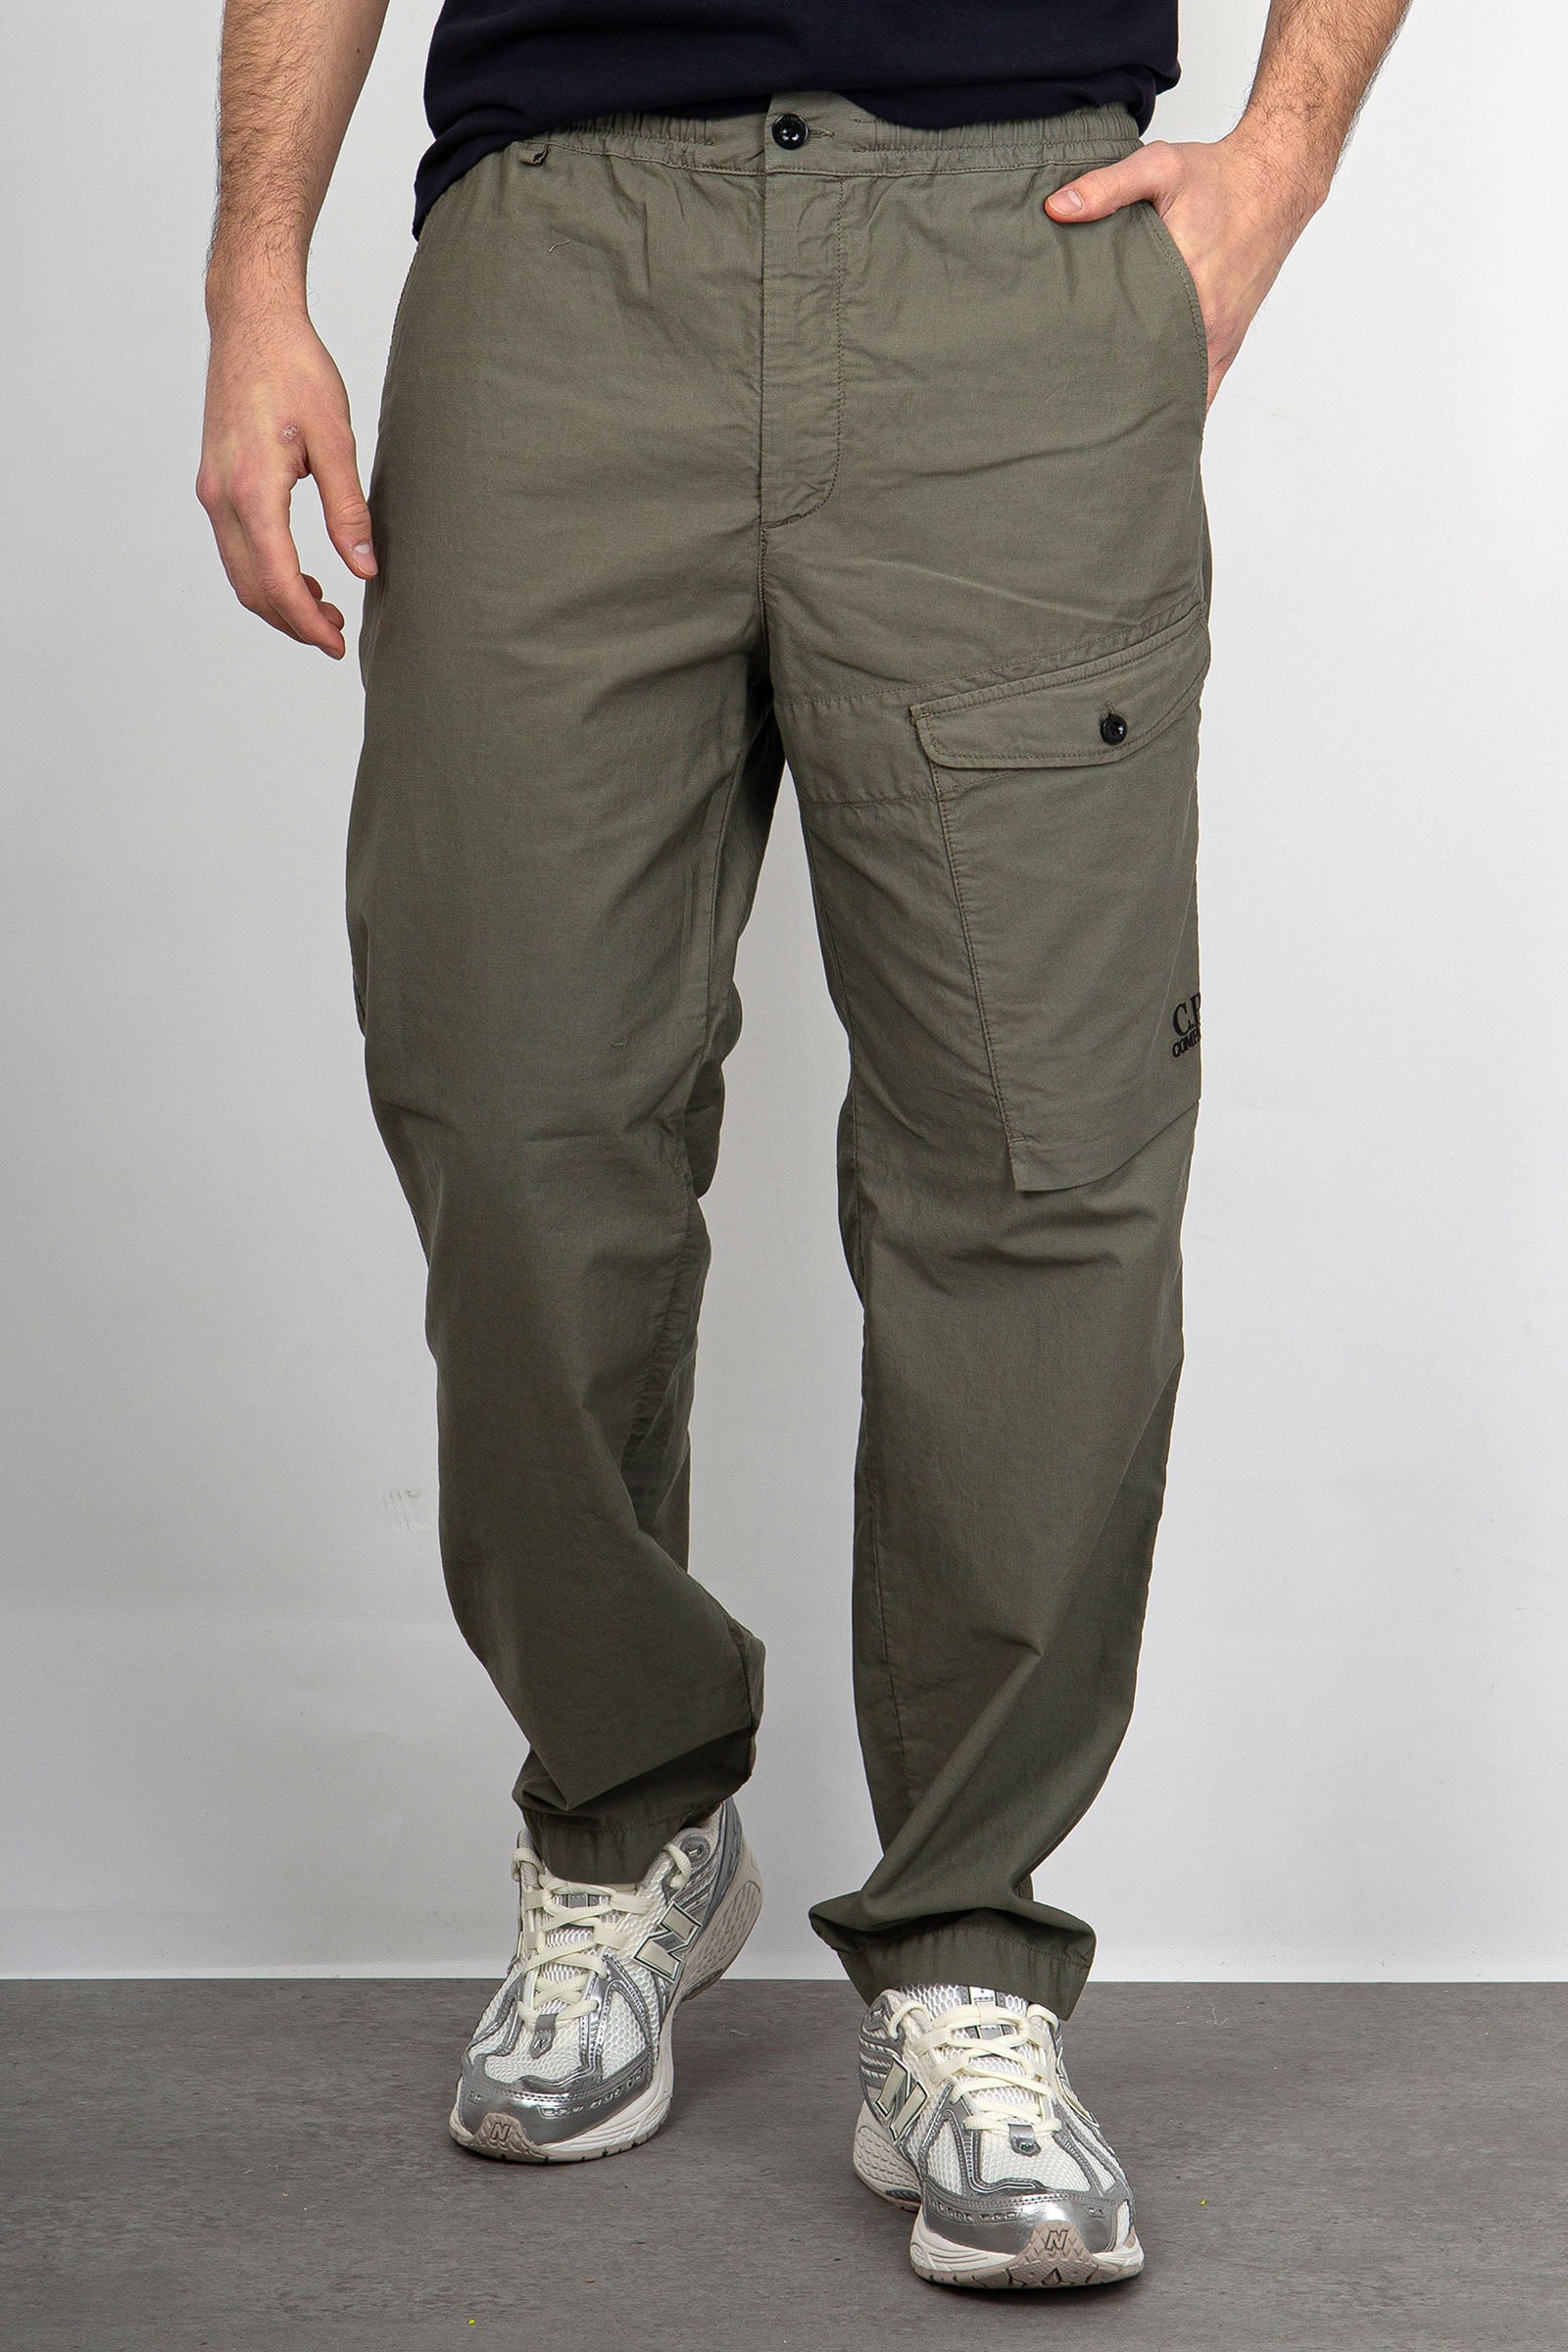 C.P. Company Pantalone Cargo Cotone Verde Militare - 4